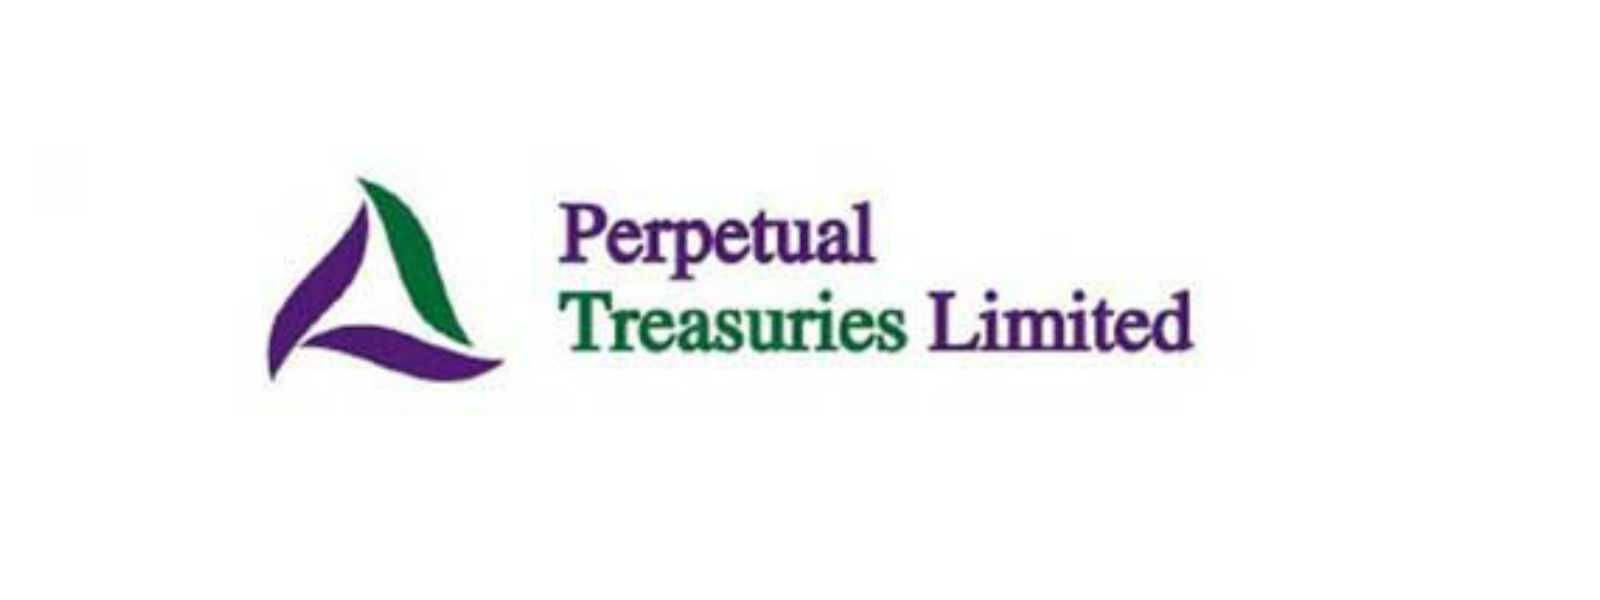 Perpetual Treasuries நிறுவனம் மீதான தடை நீடிப்பு 